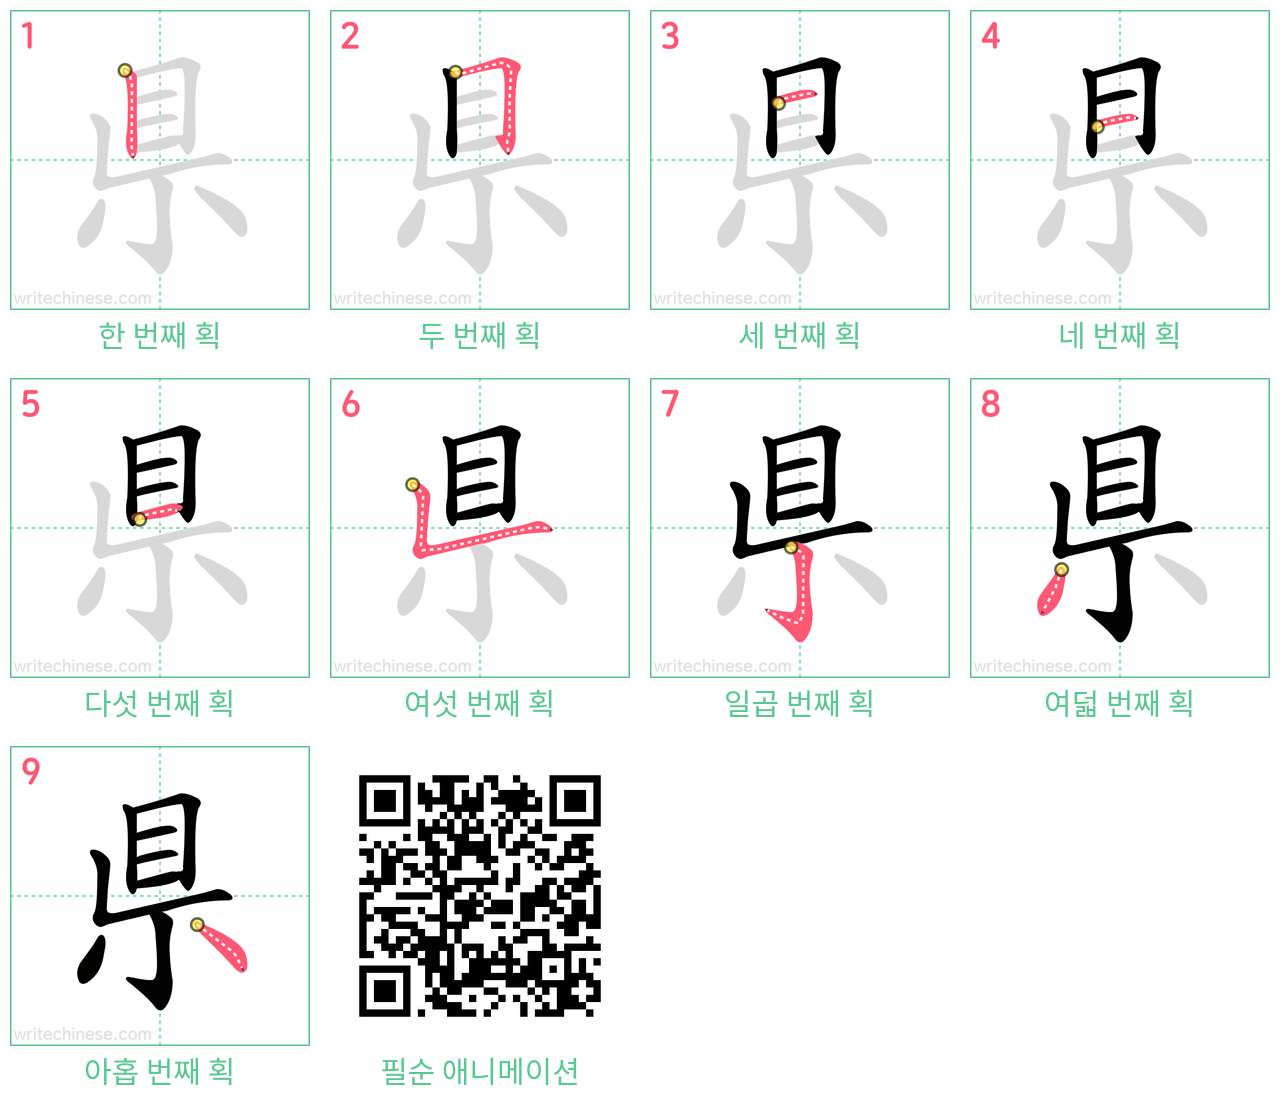 県 step-by-step stroke order diagrams